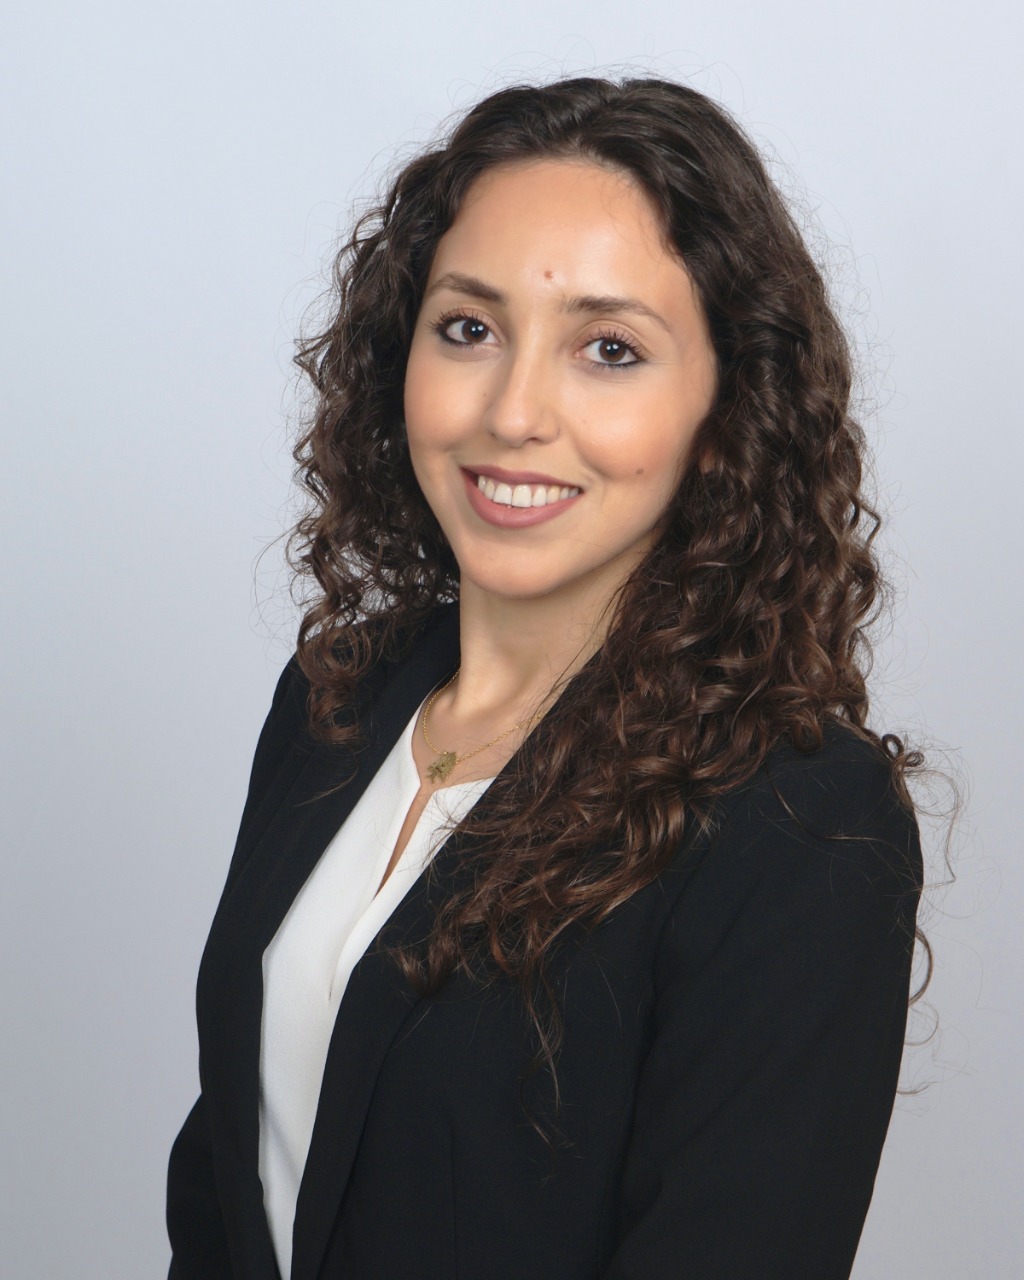 Christelle El Khoury